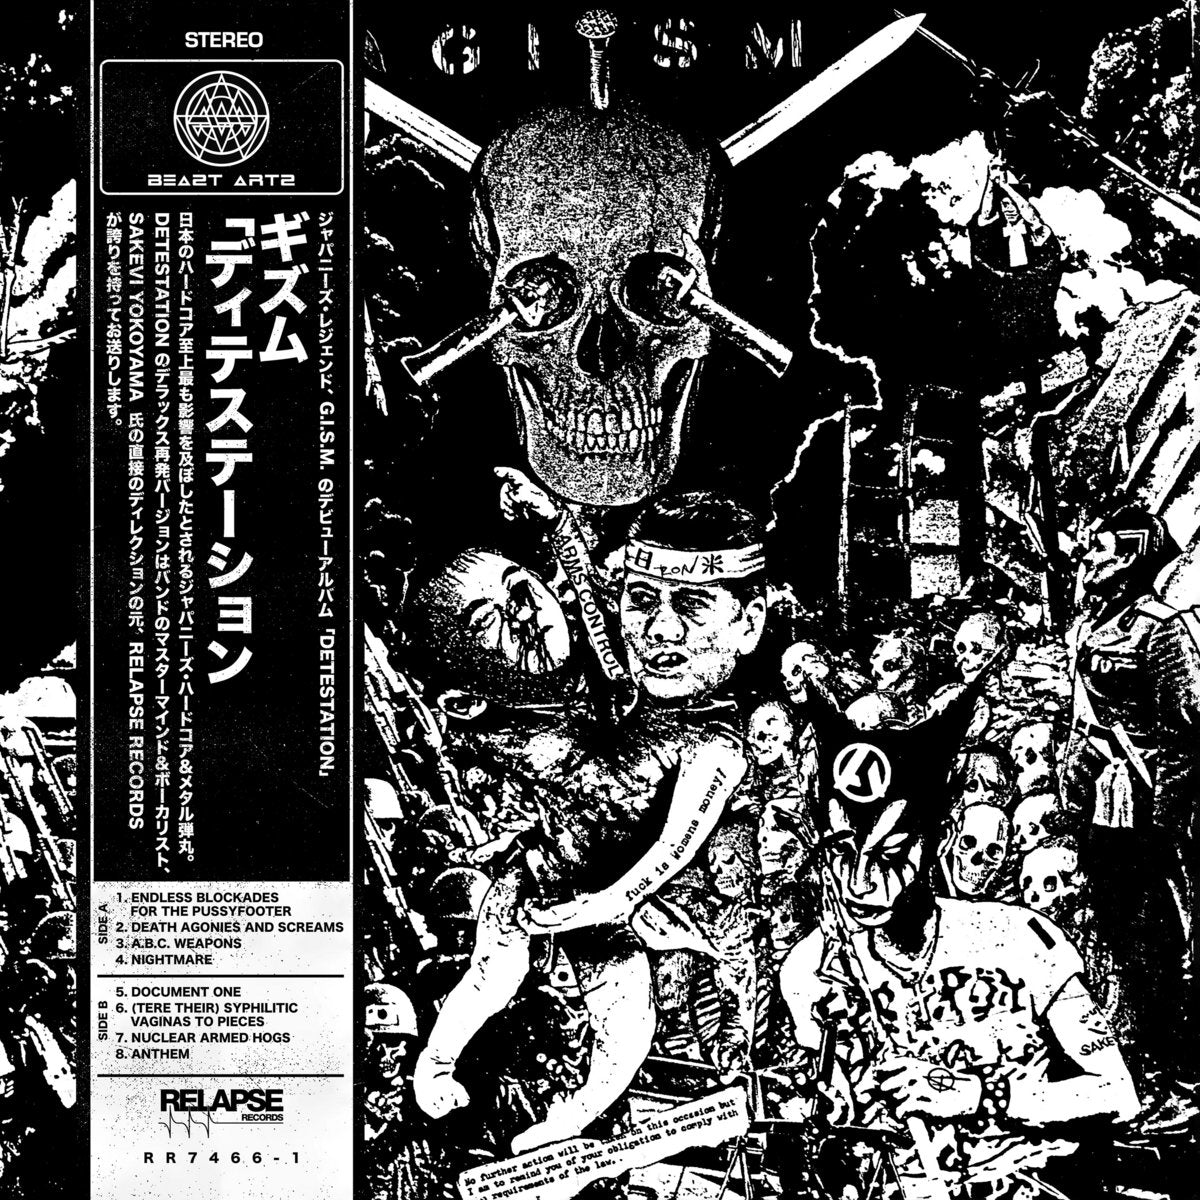 GISM - Detestation LP - Vinyl - Relapse